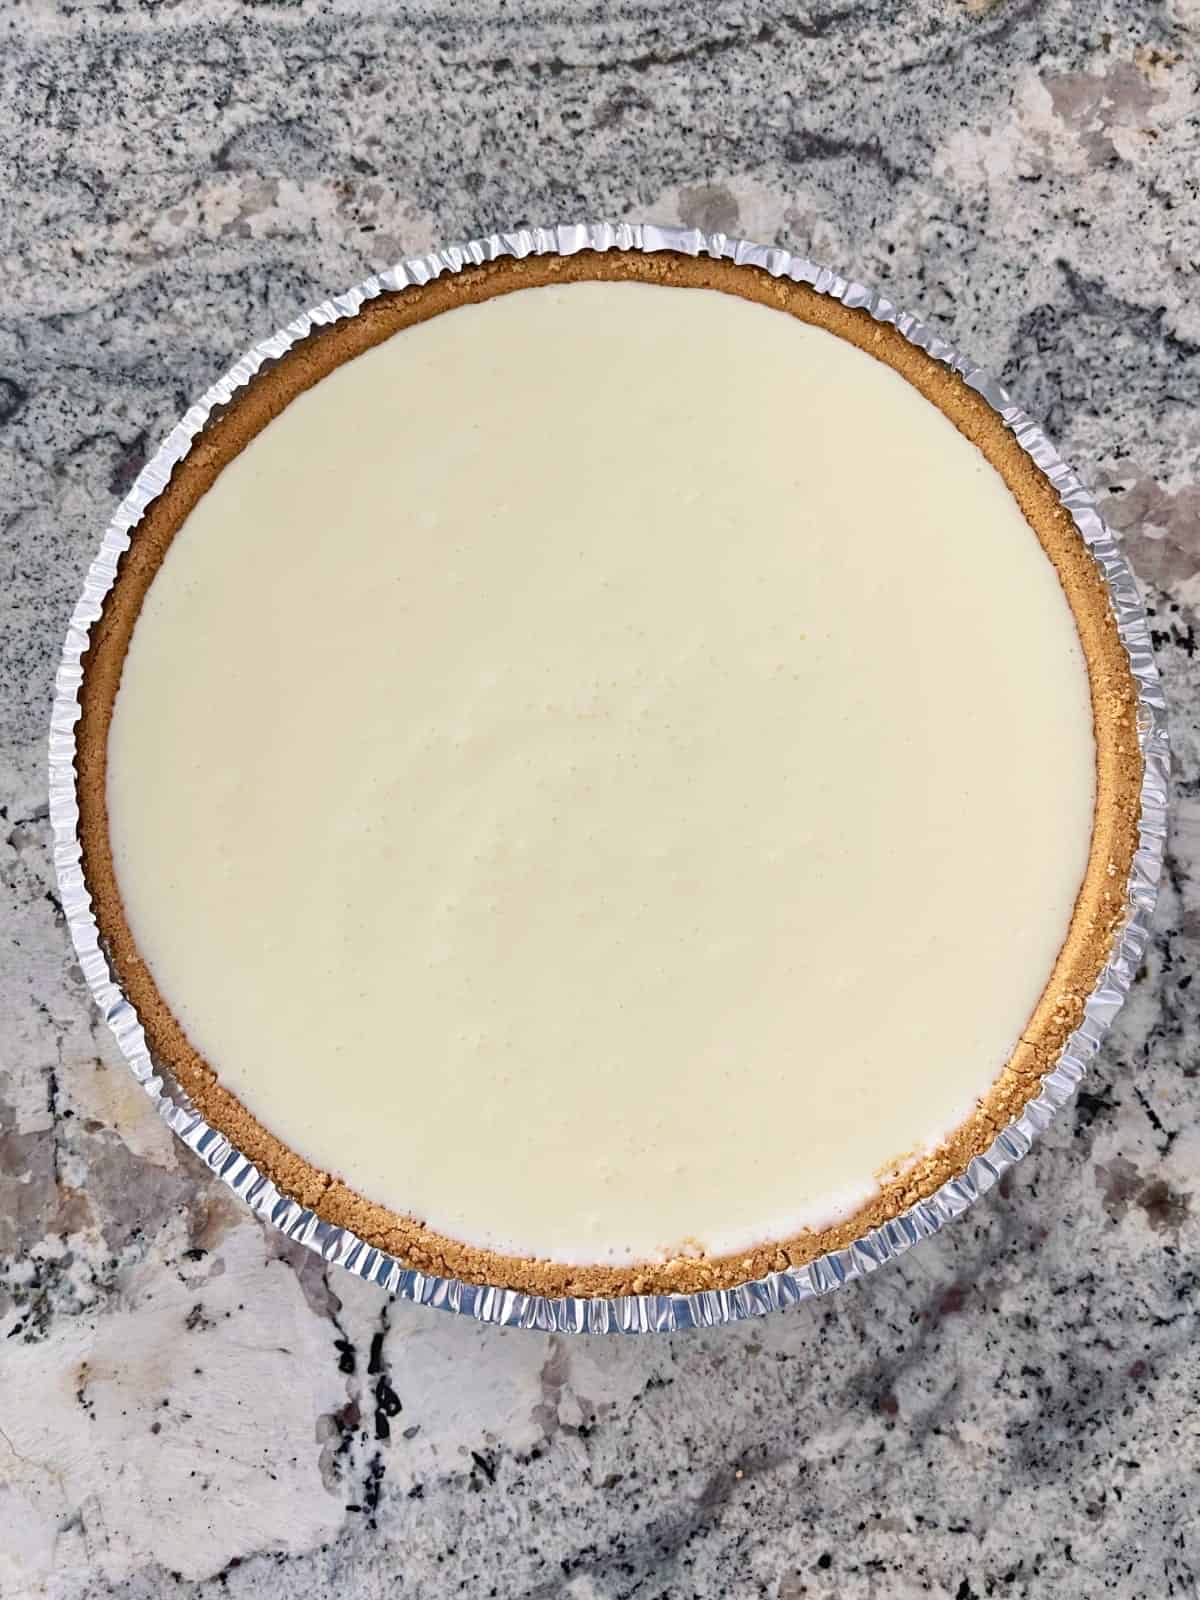 Lemon Jello yogurt pie in graham cracker crust.